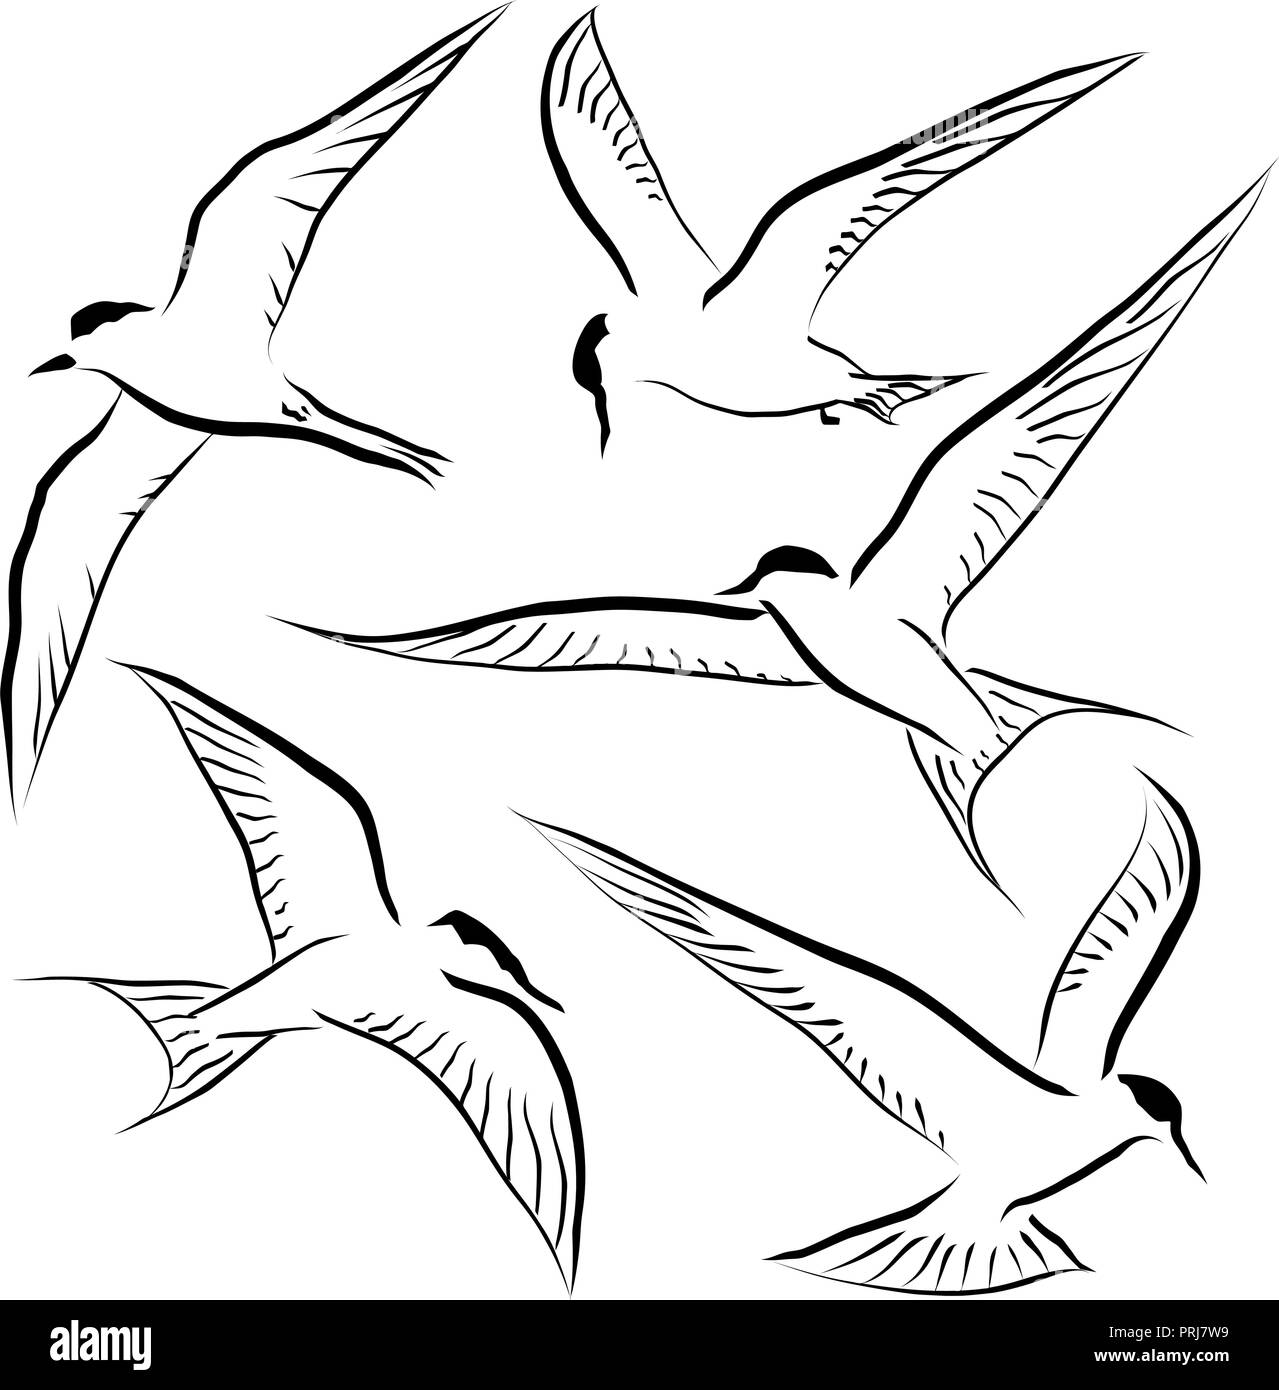 Satz von bearbeitbaren Vektor Skizzen von generischen Seeschwalben im Flug Stock Vektor